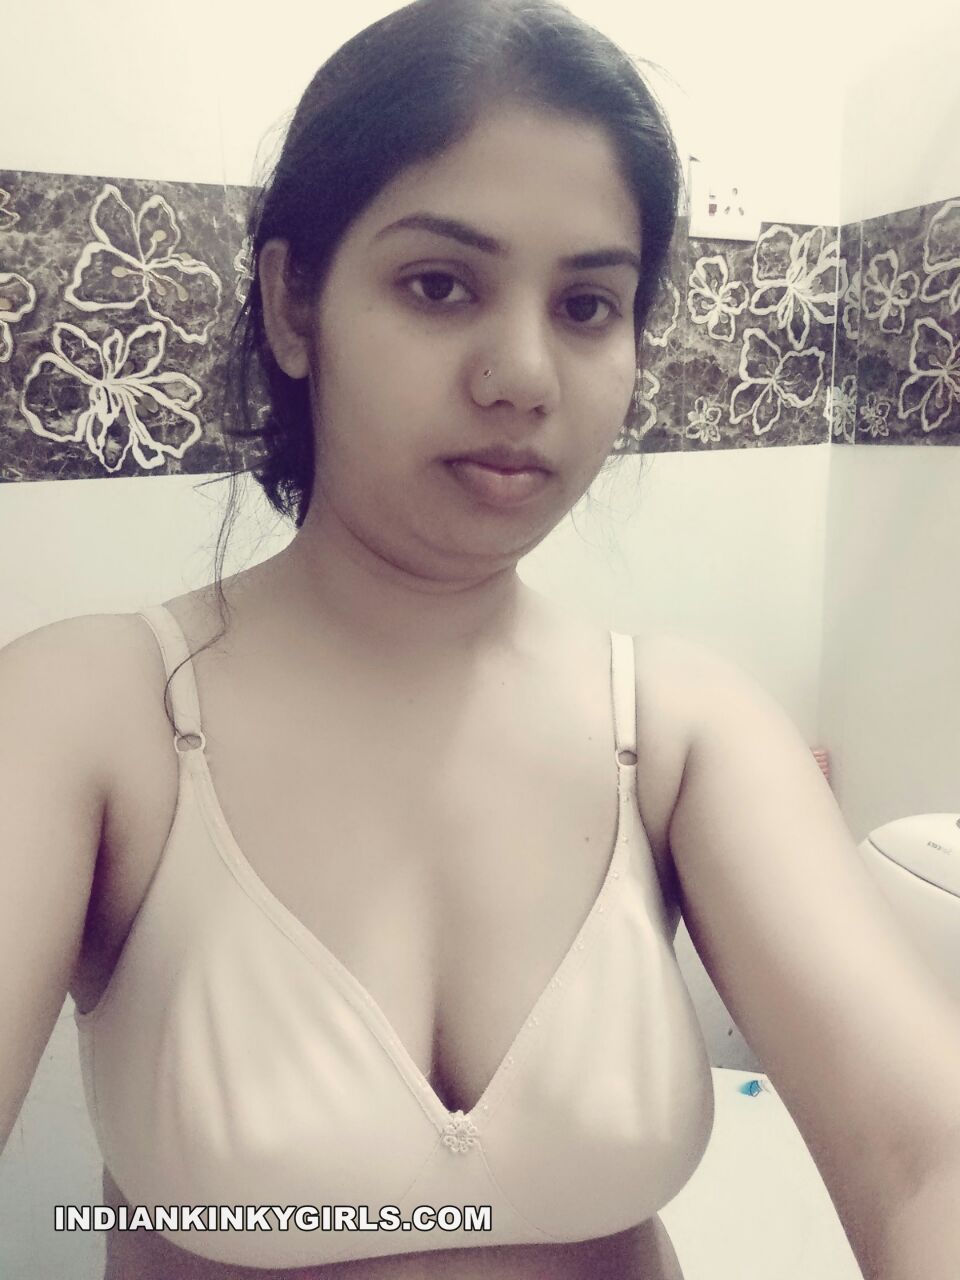 Amateur Indian College Girl Nude Selfies Leaked .jpg